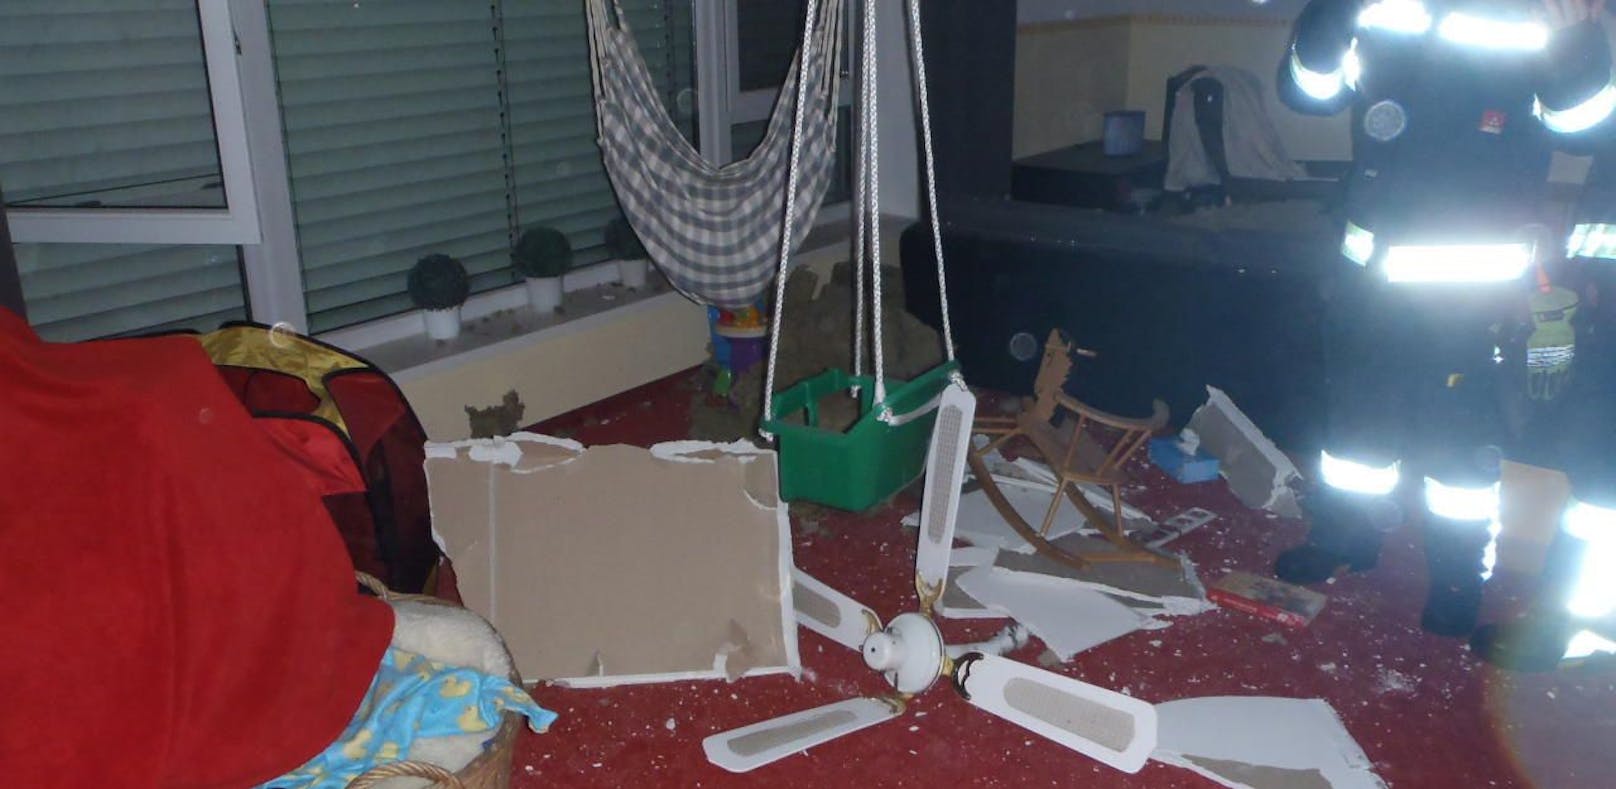 Kinderzimmer von Blitz zerstört: Glück für Mäderl